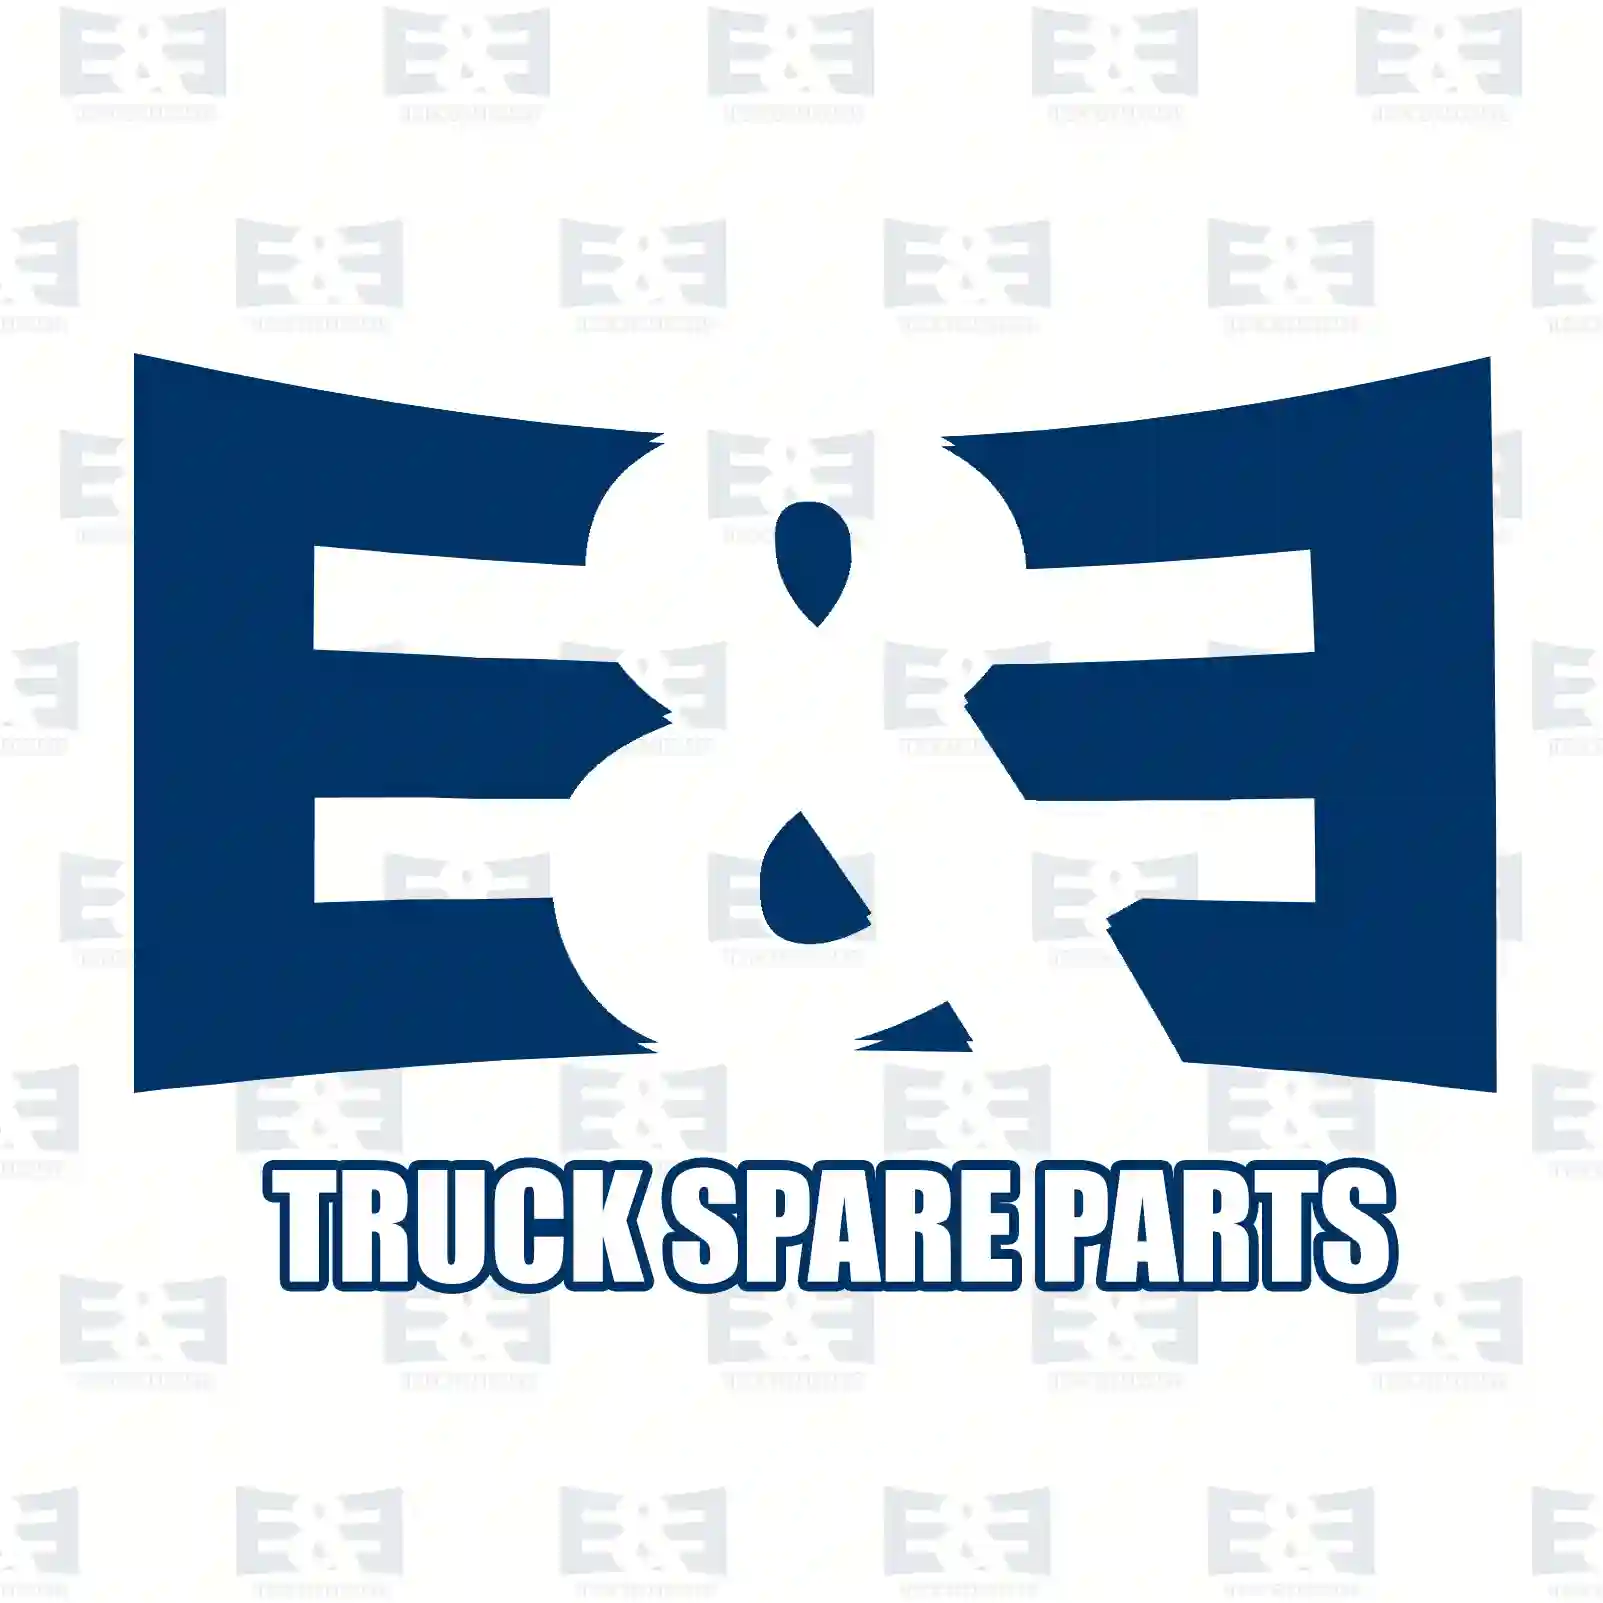 Propeller shaft, 2E2276747, 42103392 ||  2E2276747 E&E Truck Spare Parts | Truck Spare Parts, Auotomotive Spare Parts Propeller shaft, 2E2276747, 42103392 ||  2E2276747 E&E Truck Spare Parts | Truck Spare Parts, Auotomotive Spare Parts